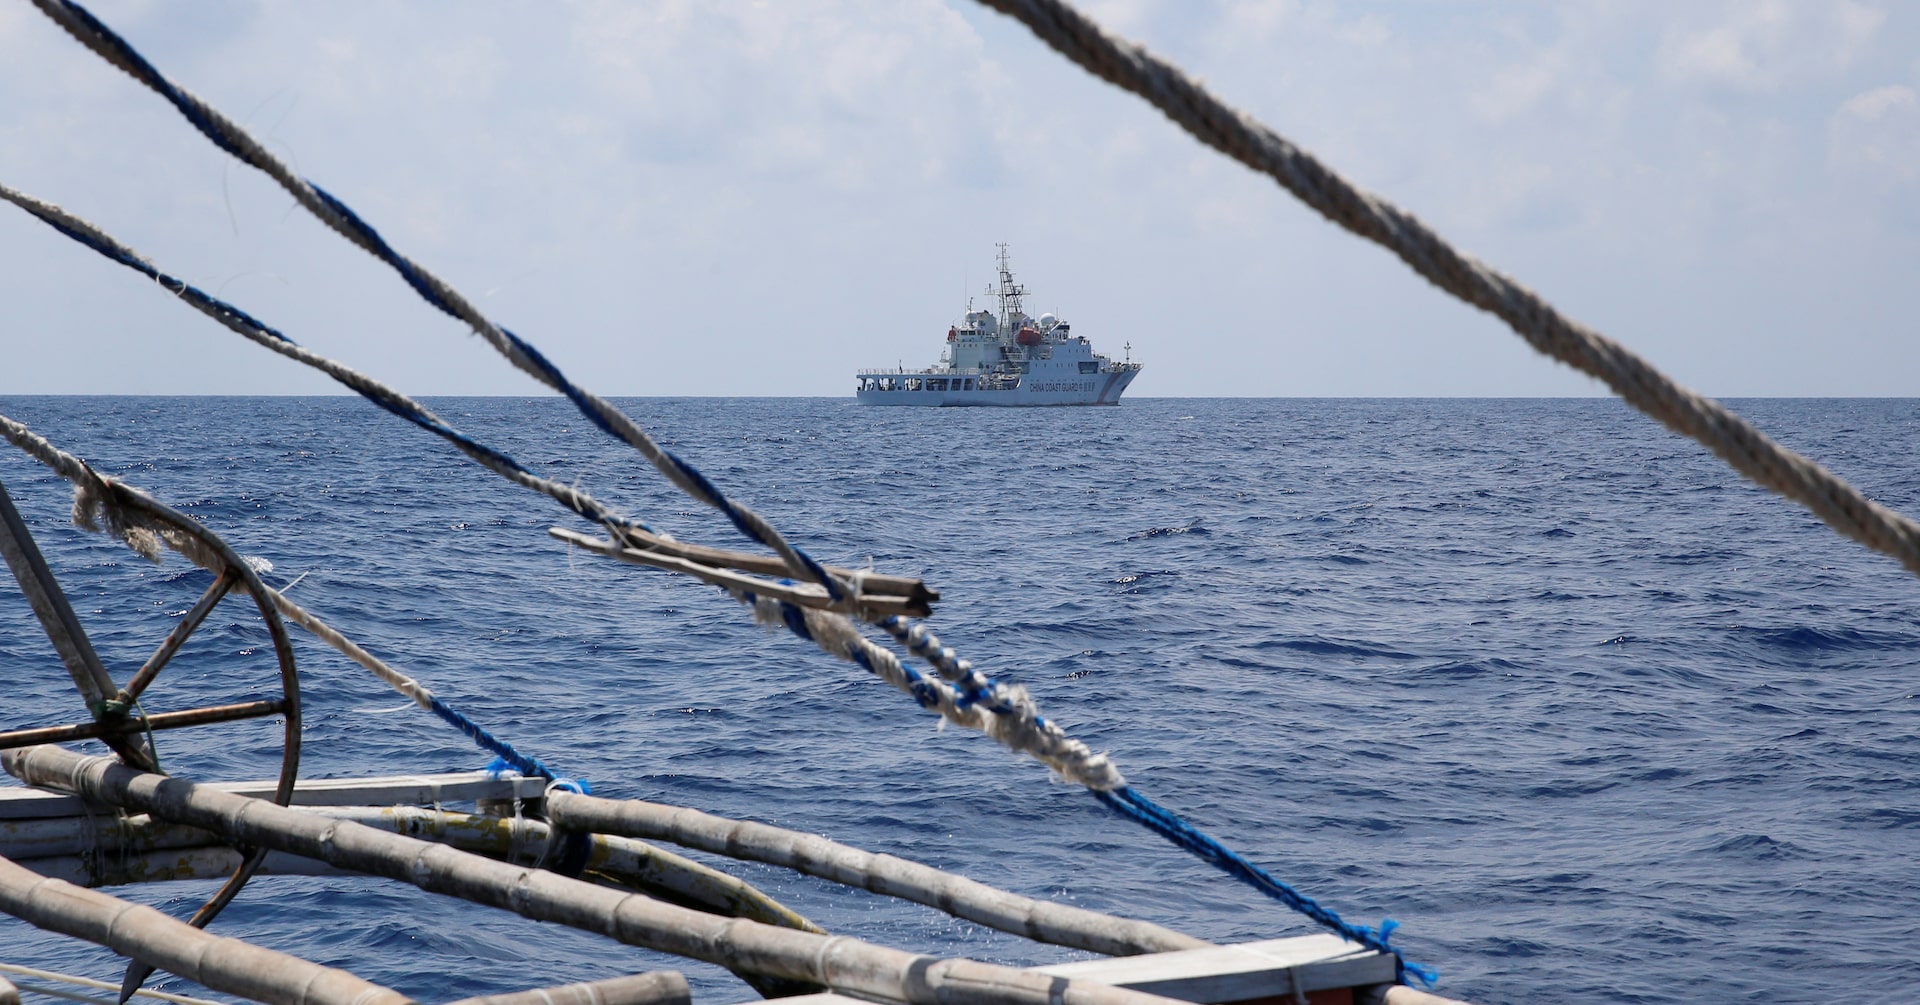 フィリピン、中国の放水で船が損傷と非難 スカボロー礁近海で